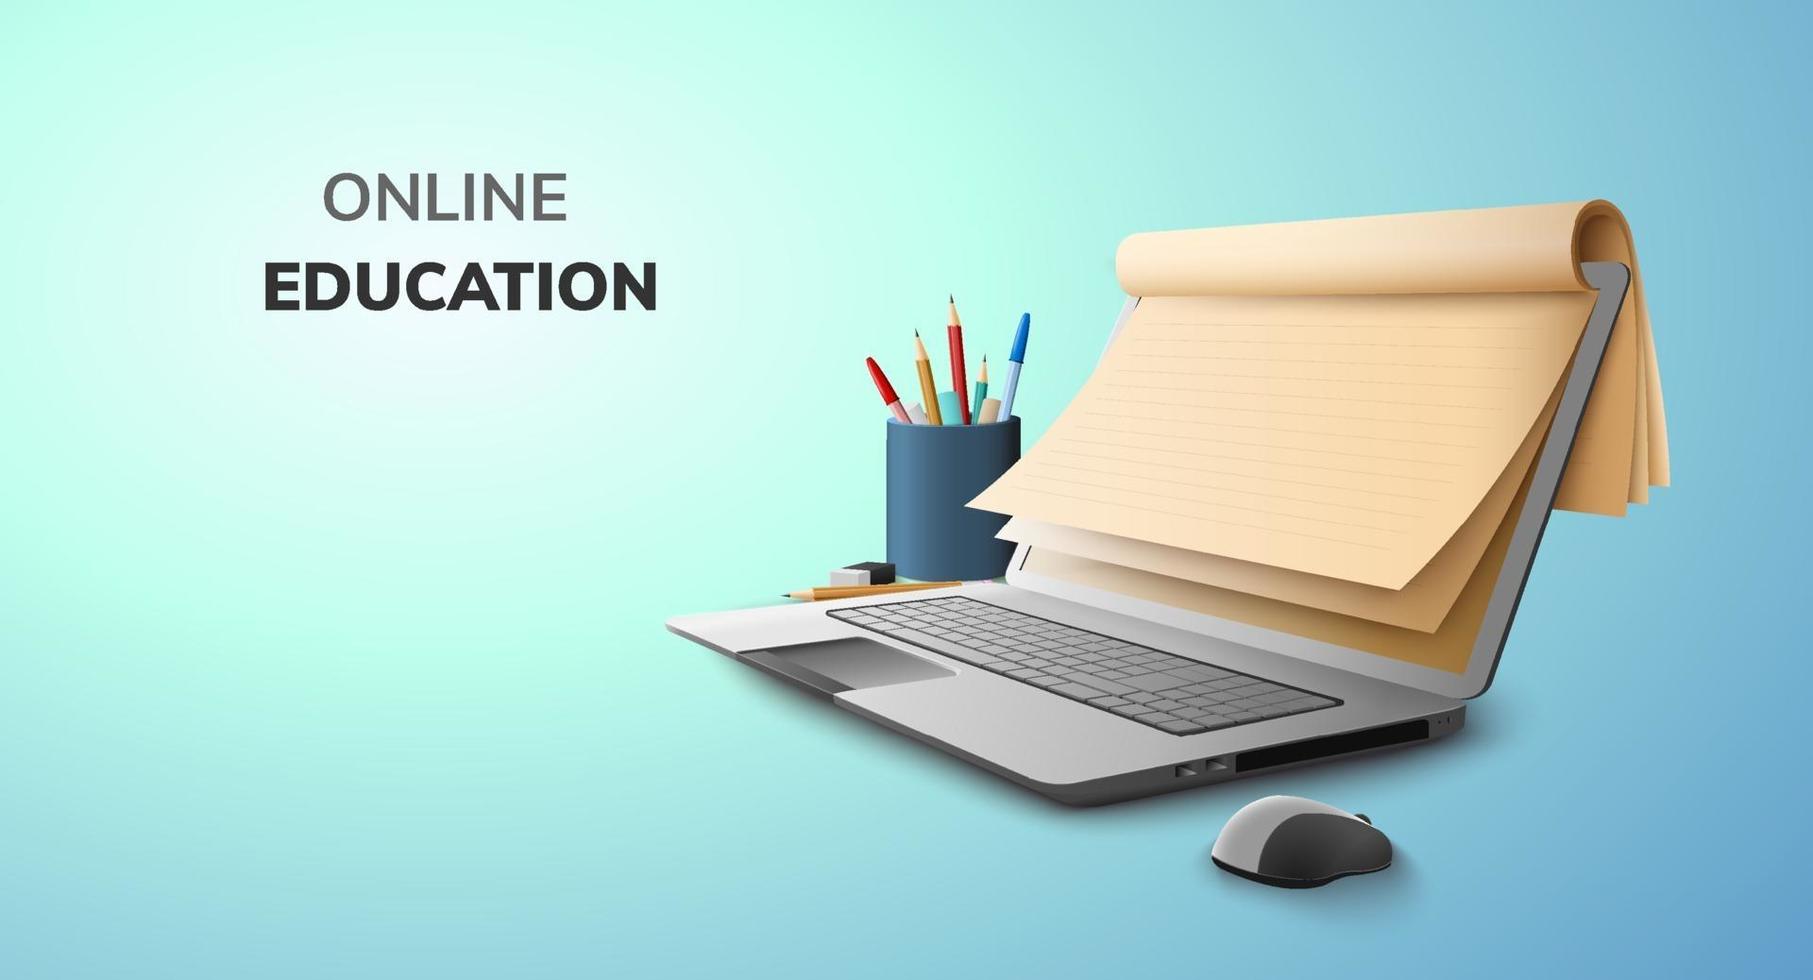 digitale lezing online onderwijs lege ruimte papier en afgestudeerde hoed op laptop website achtergrond. sociale afstand concept vector